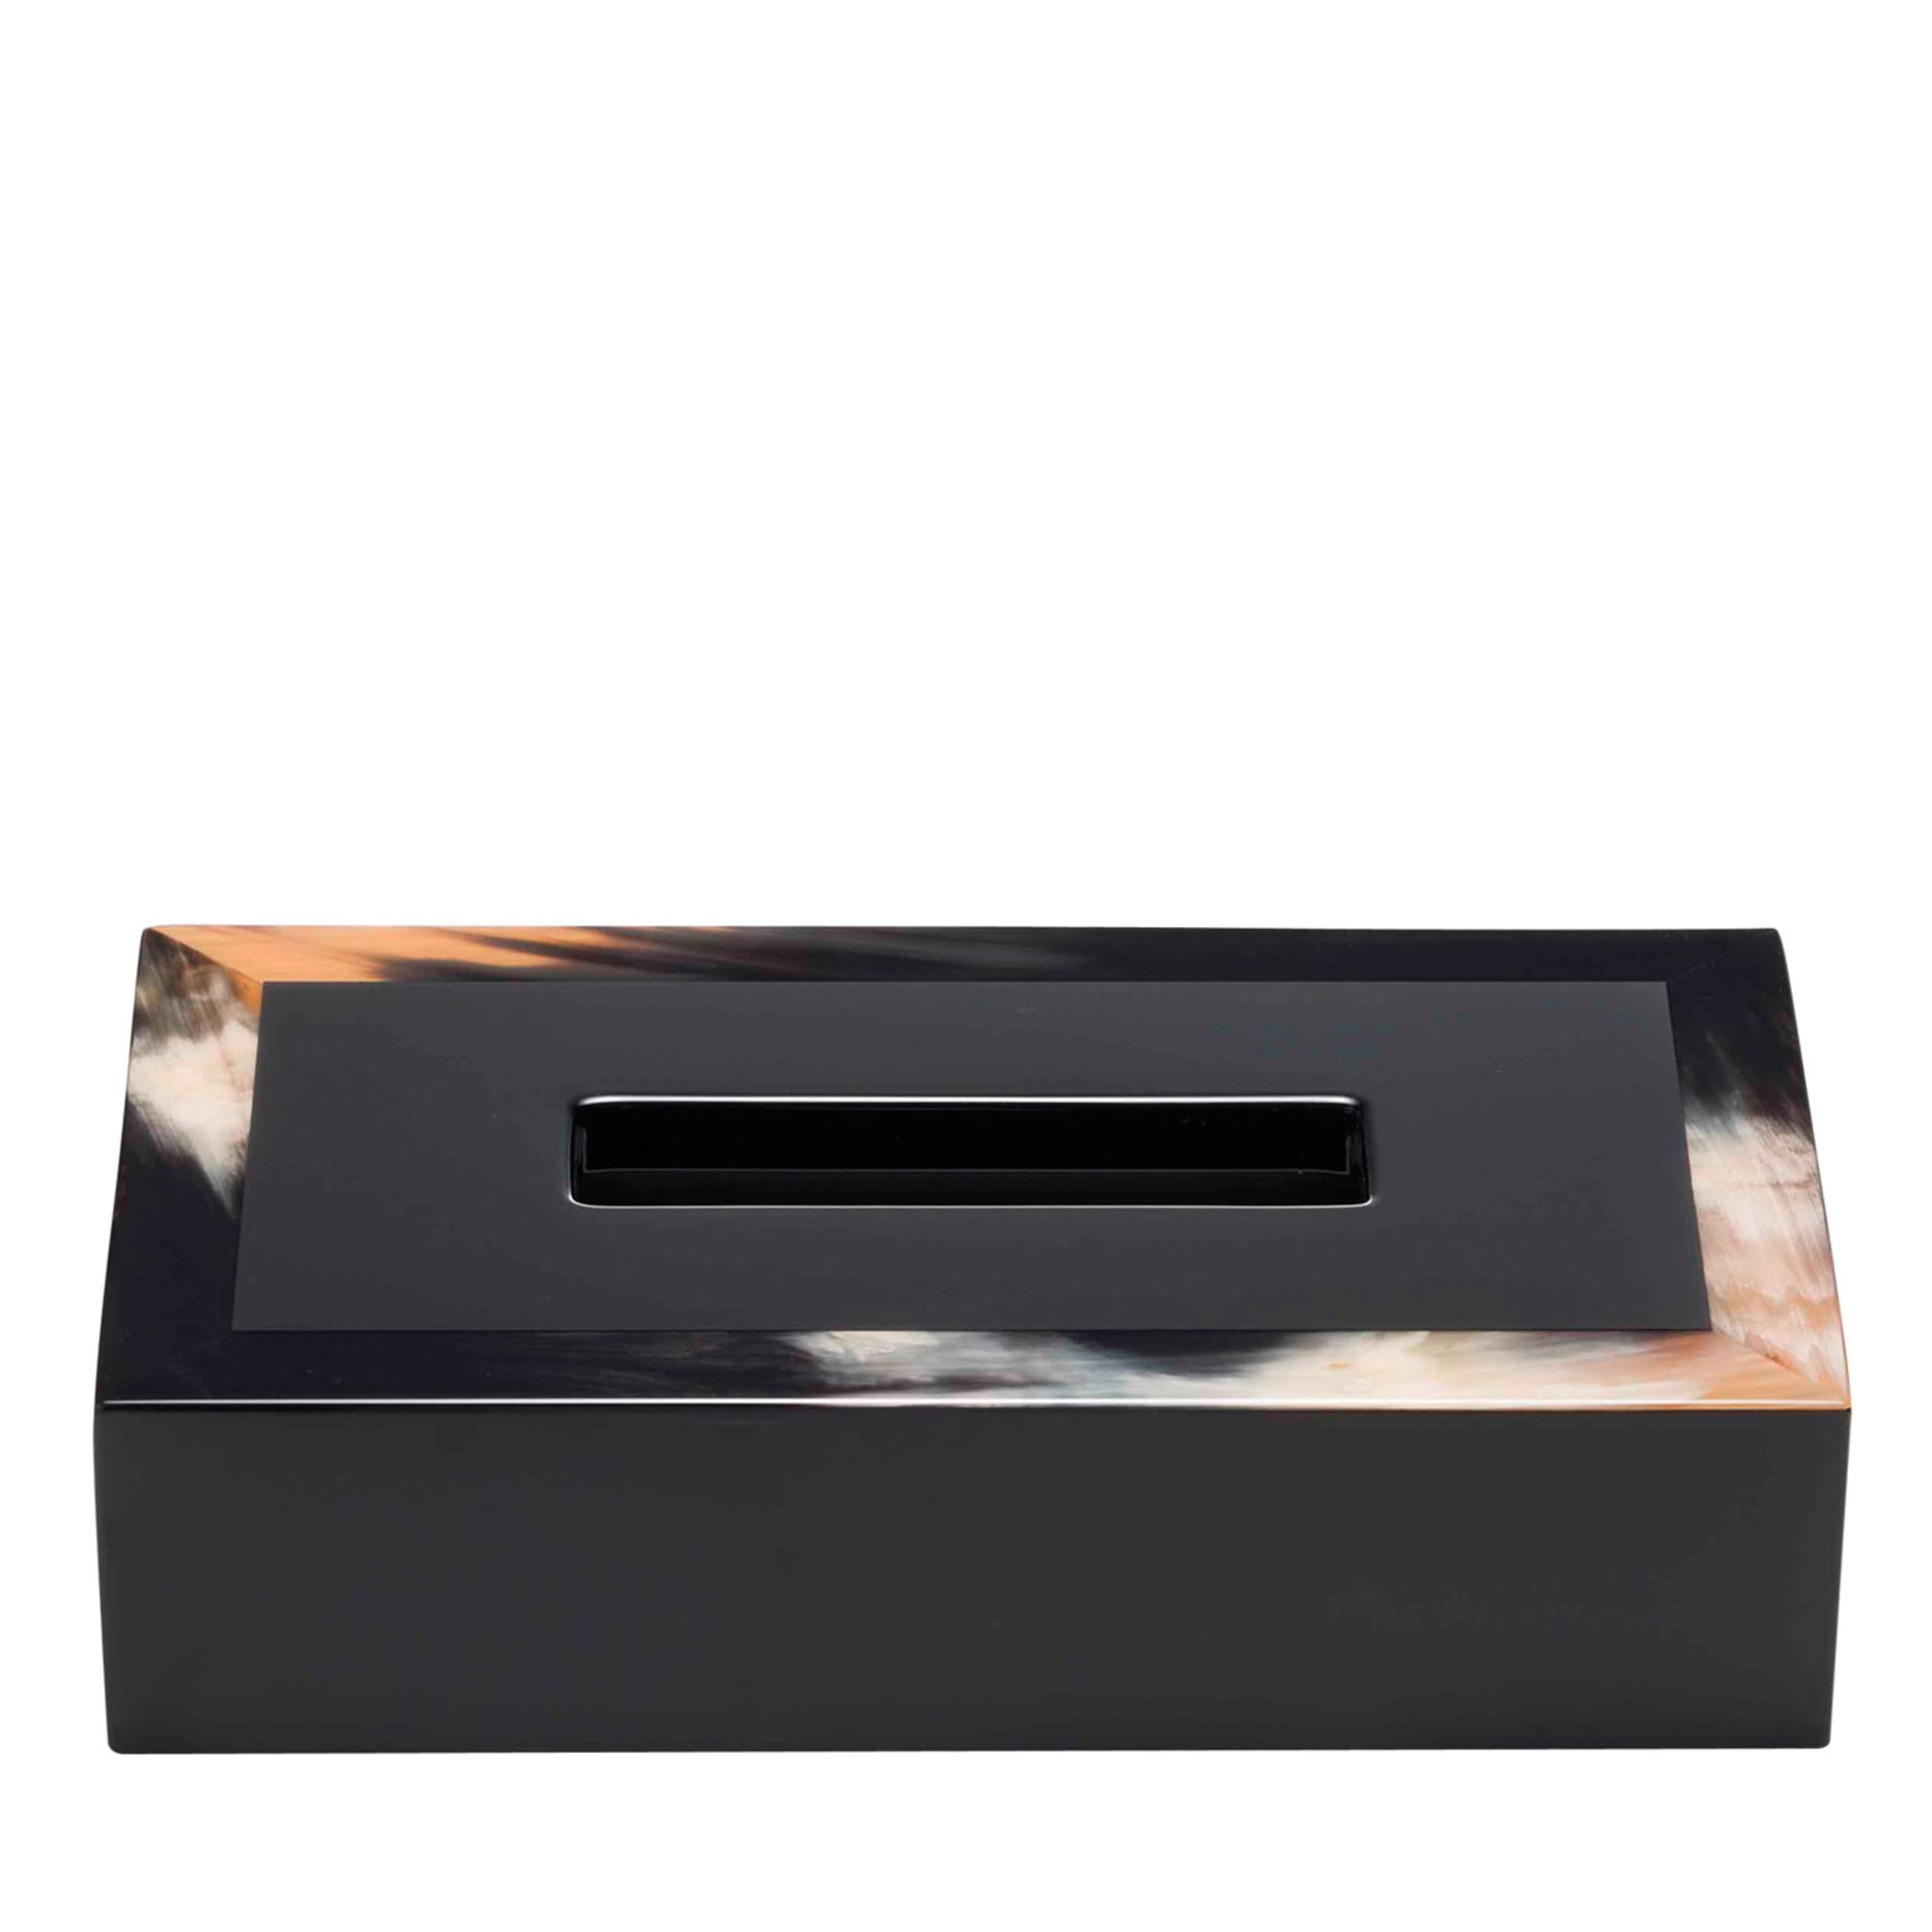 Black Tissue Box Holder - Main view